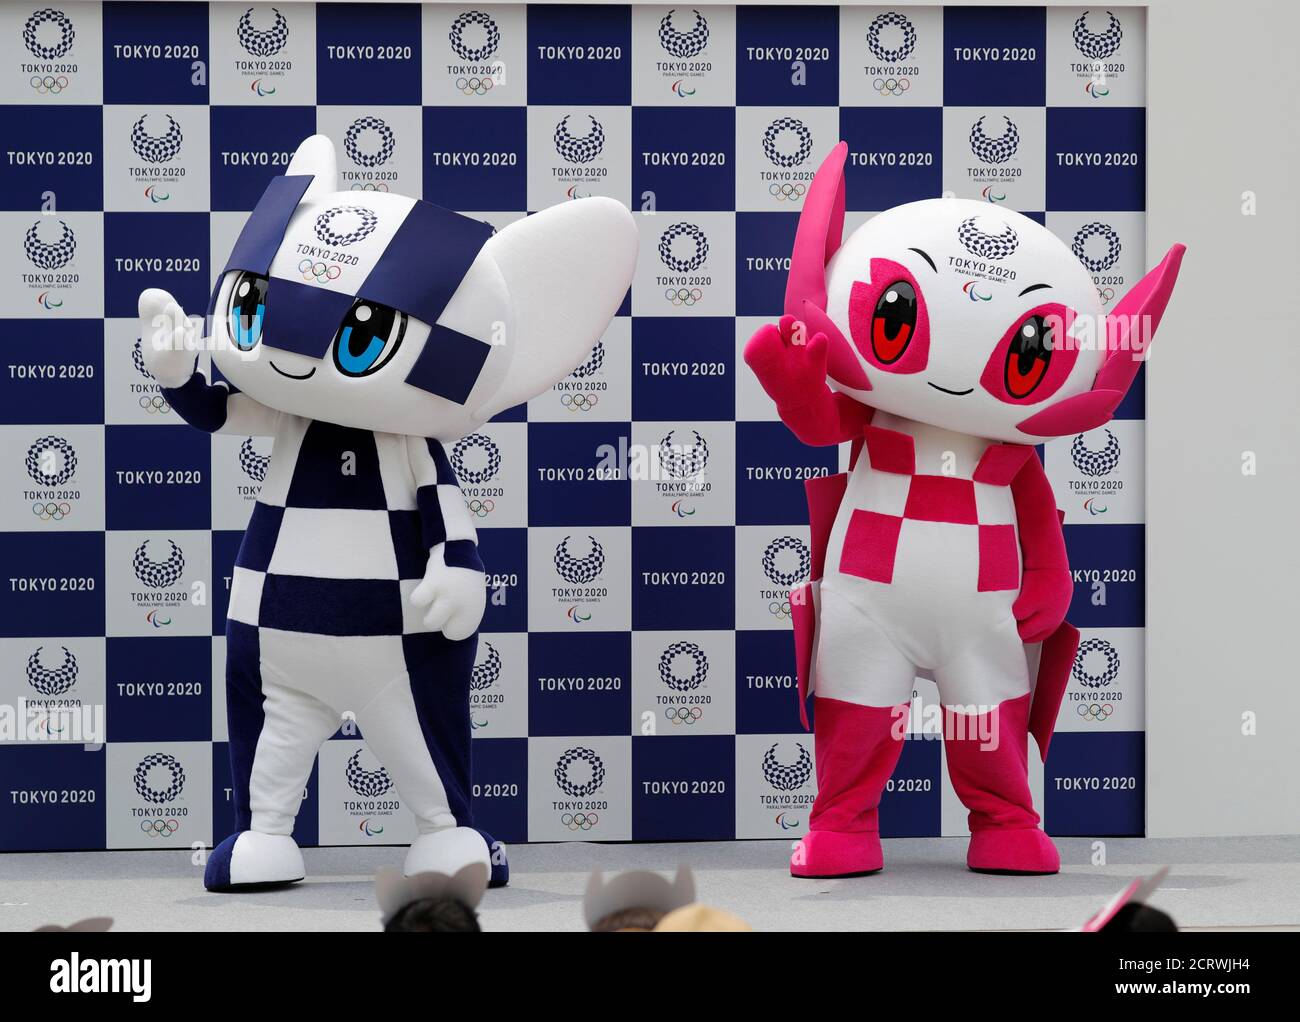 Tokio 2020 la mascota de los Juegos Olímpicos Miraitowa y la mascota  Paralímpica Someity ondean en el escenario durante el debut de las mascotas  en Tokio, Japón, el 22 de julio de